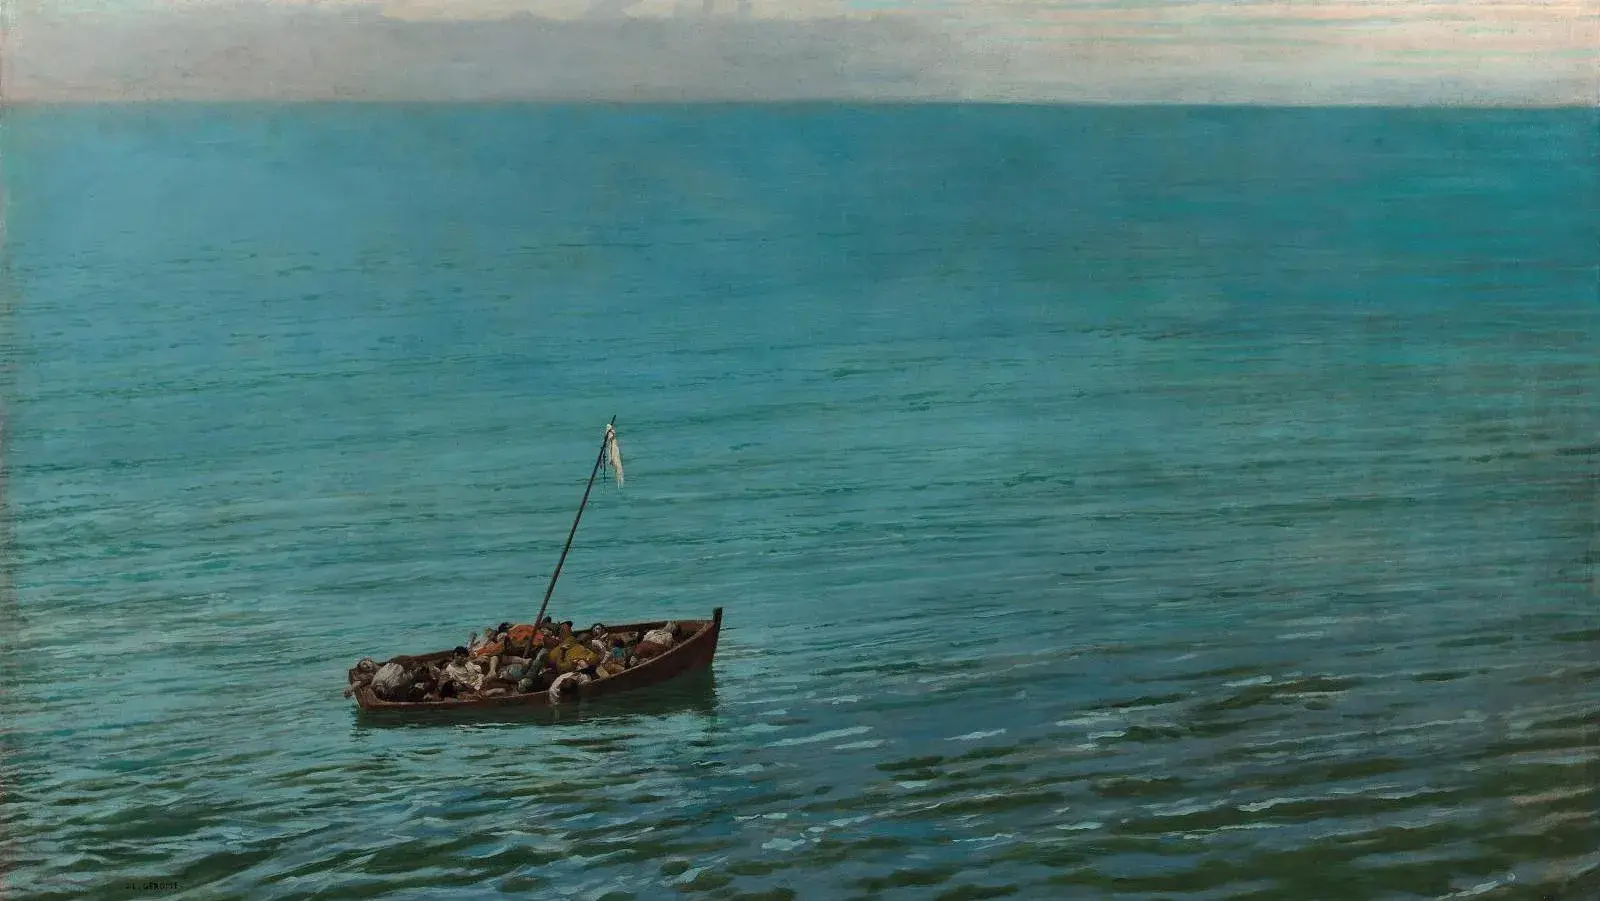 Jean-Léon Gérôme (1824-1904), L’Épave (The Shipwreck), signed painting, 70.4 x 106.3 cm/27.71 x 41.85 in. Estimate: €80,000/120,000